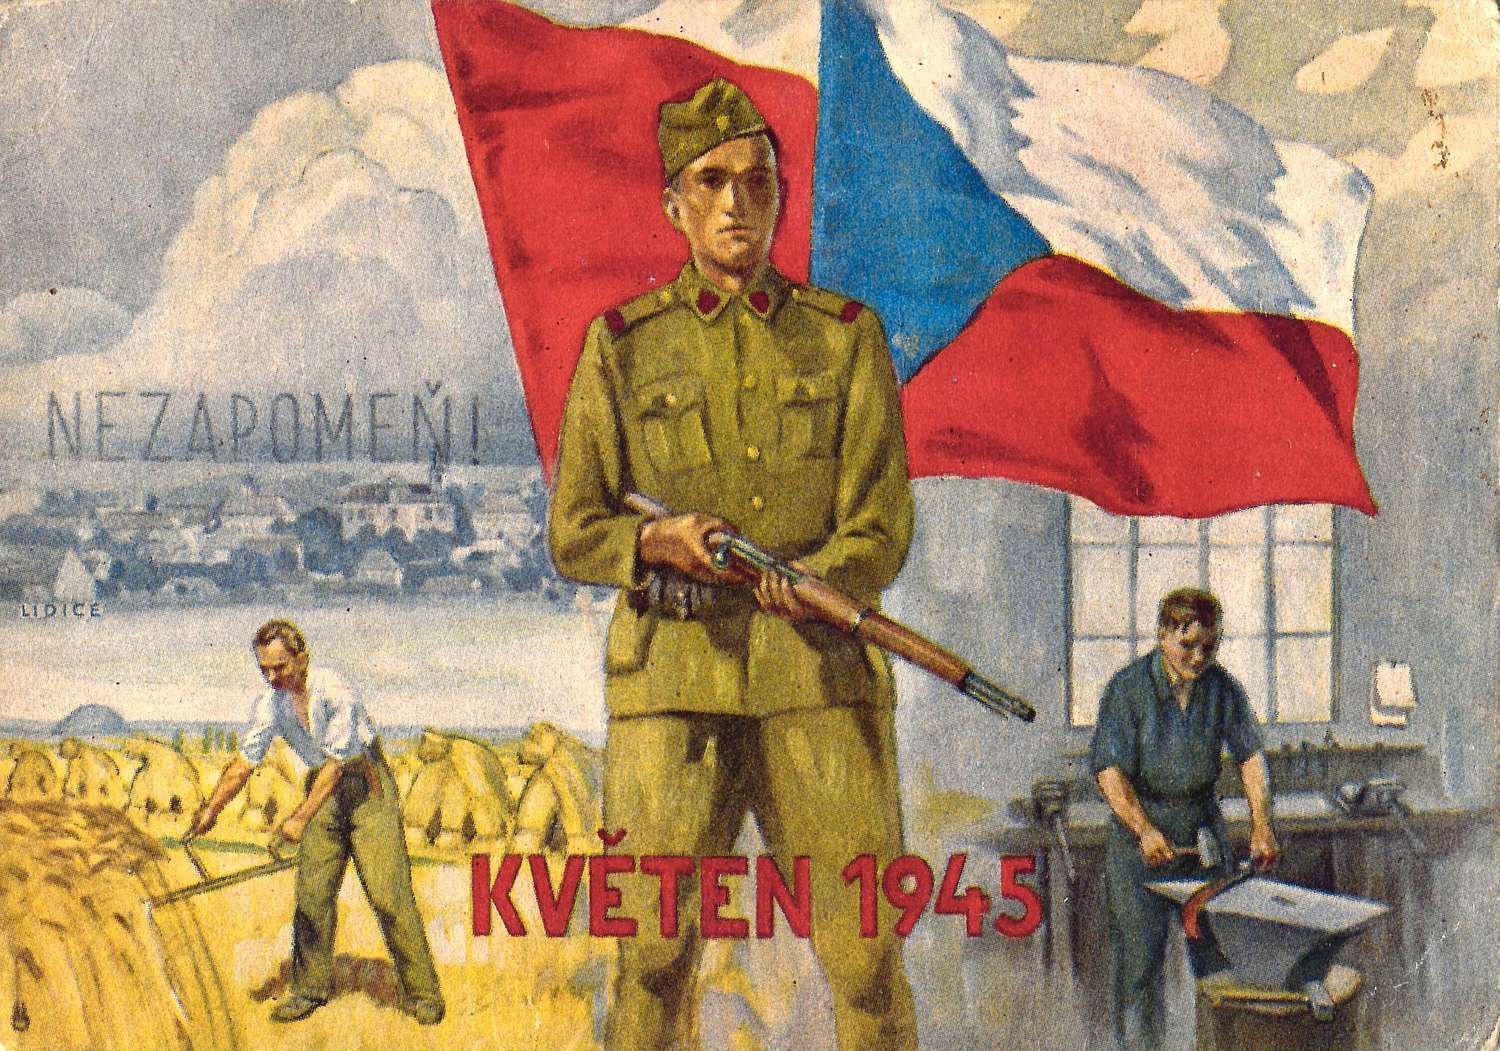 2 художественные открытки «Освобождение Чехословакии». Чехословакия, 1940-е годы.